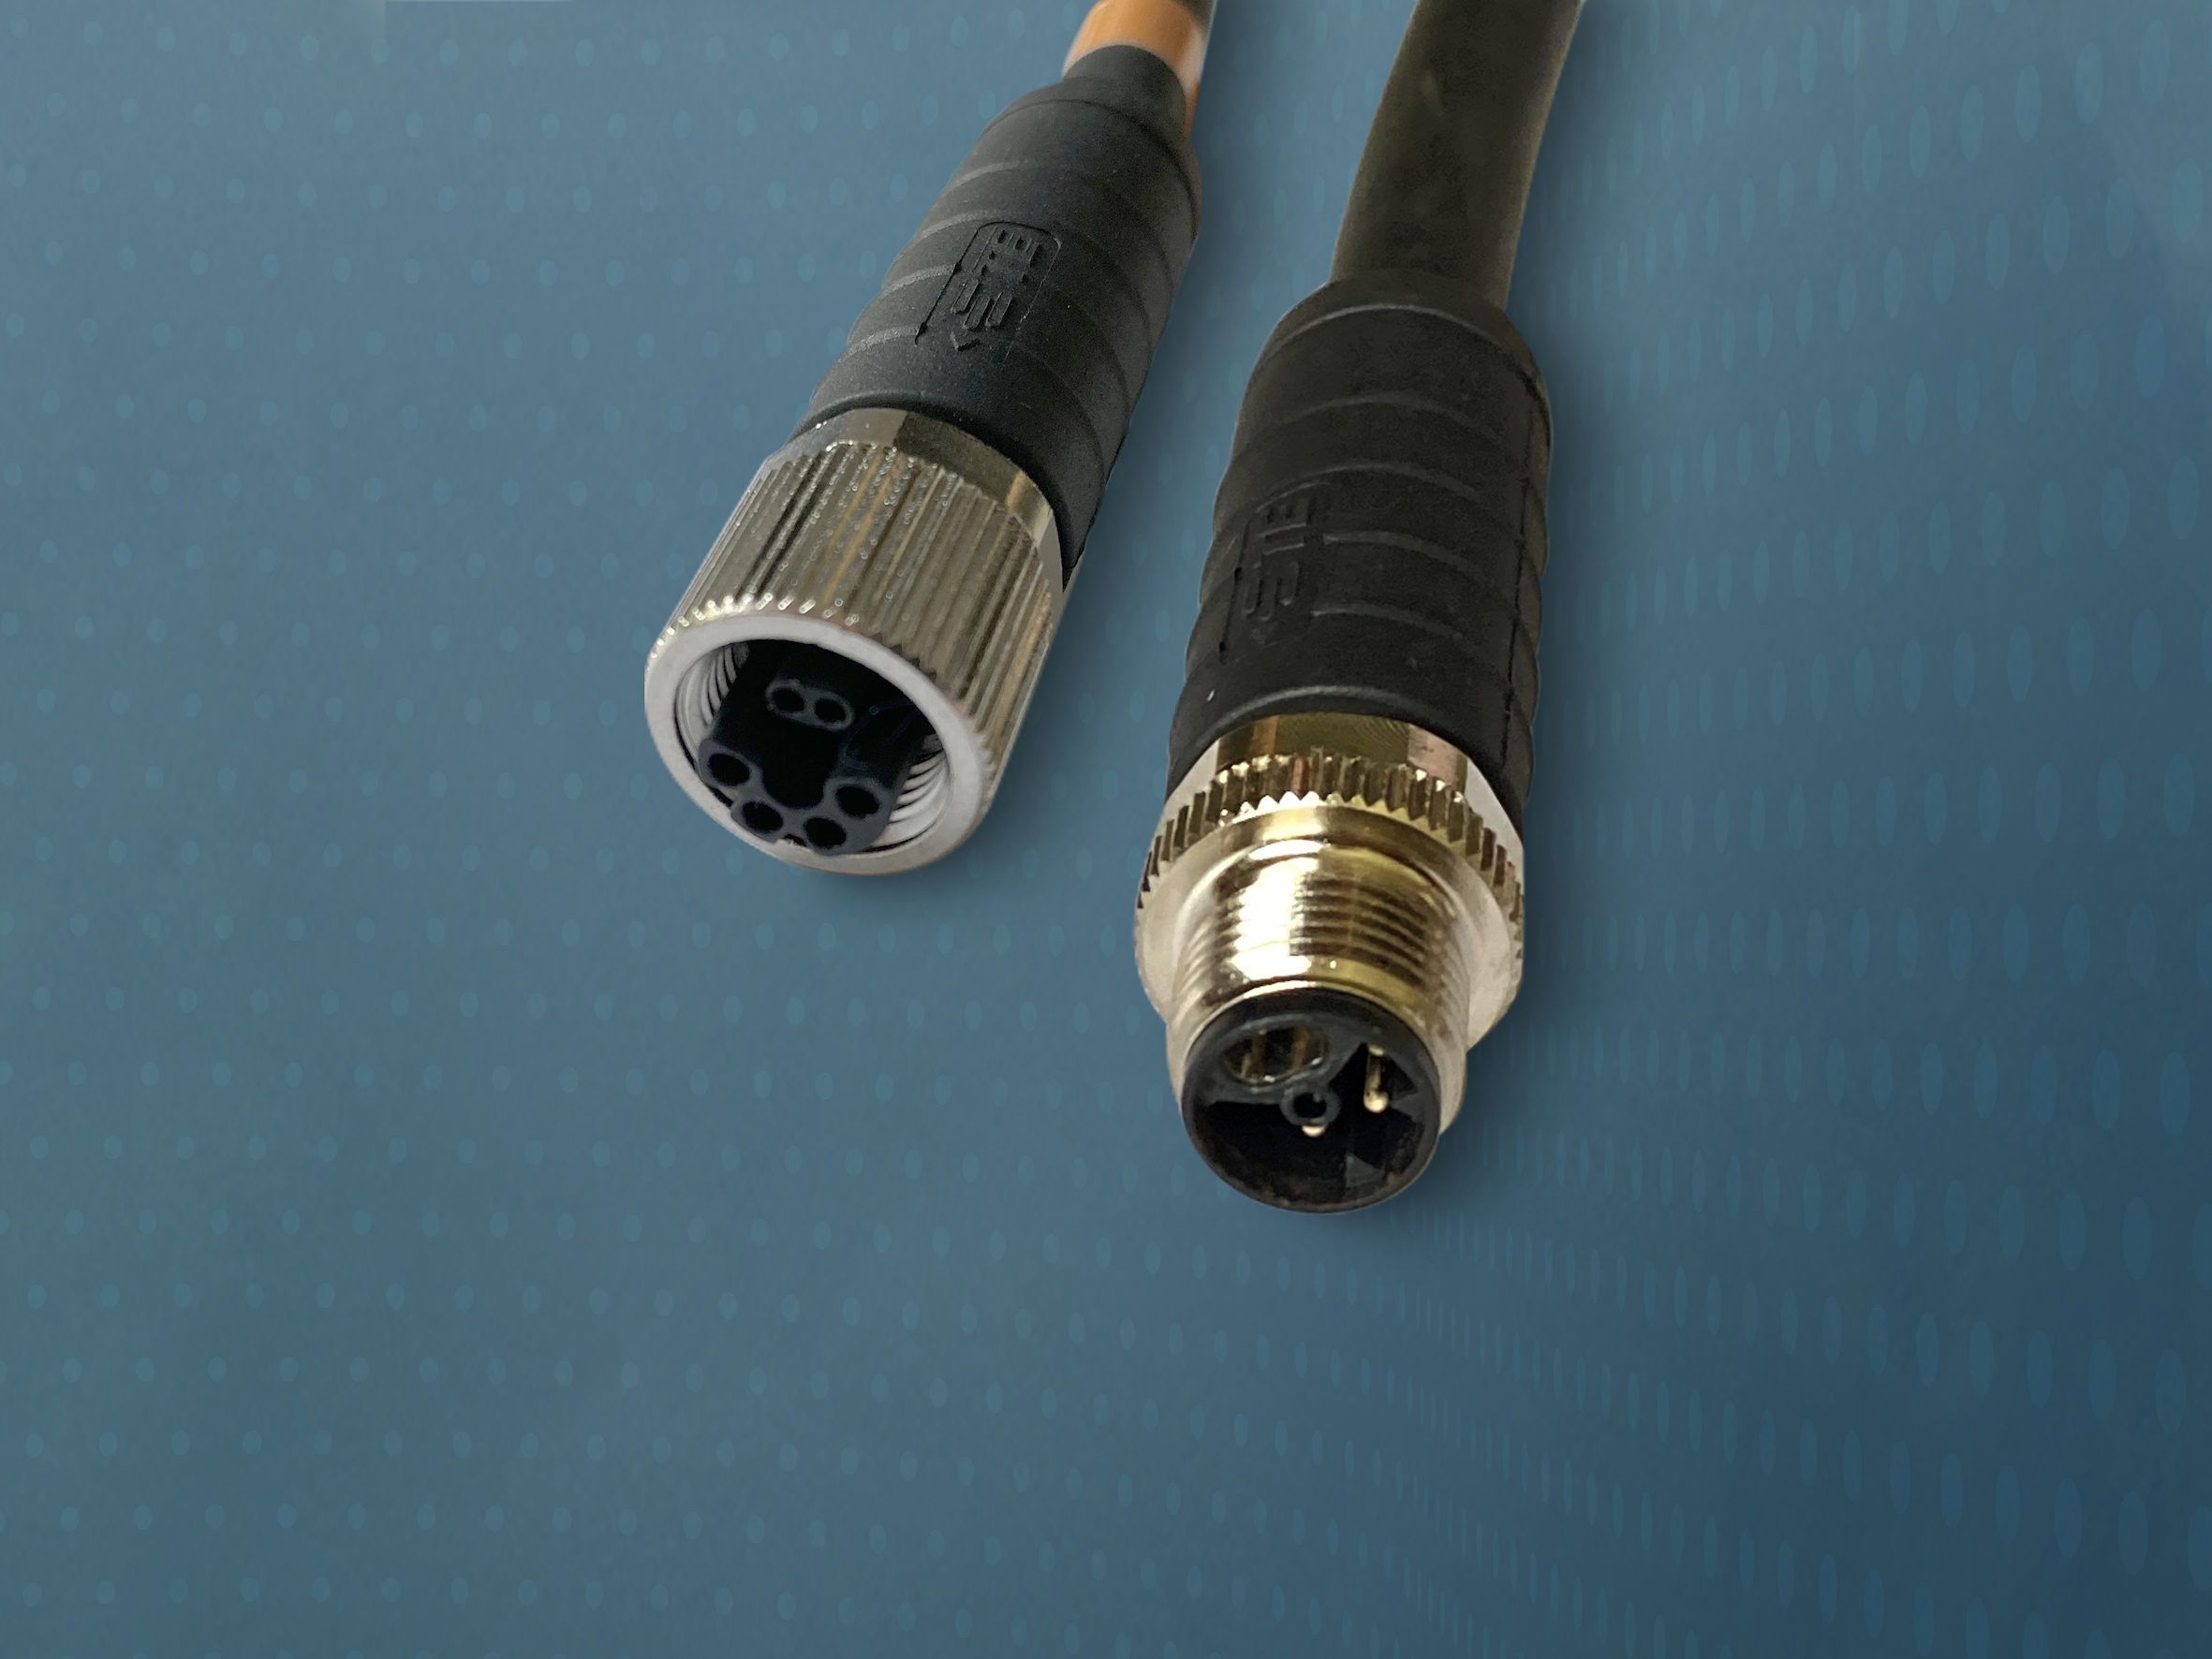 Single-Pair-Ethernet-Stecker nach IEC63171-7-Standard